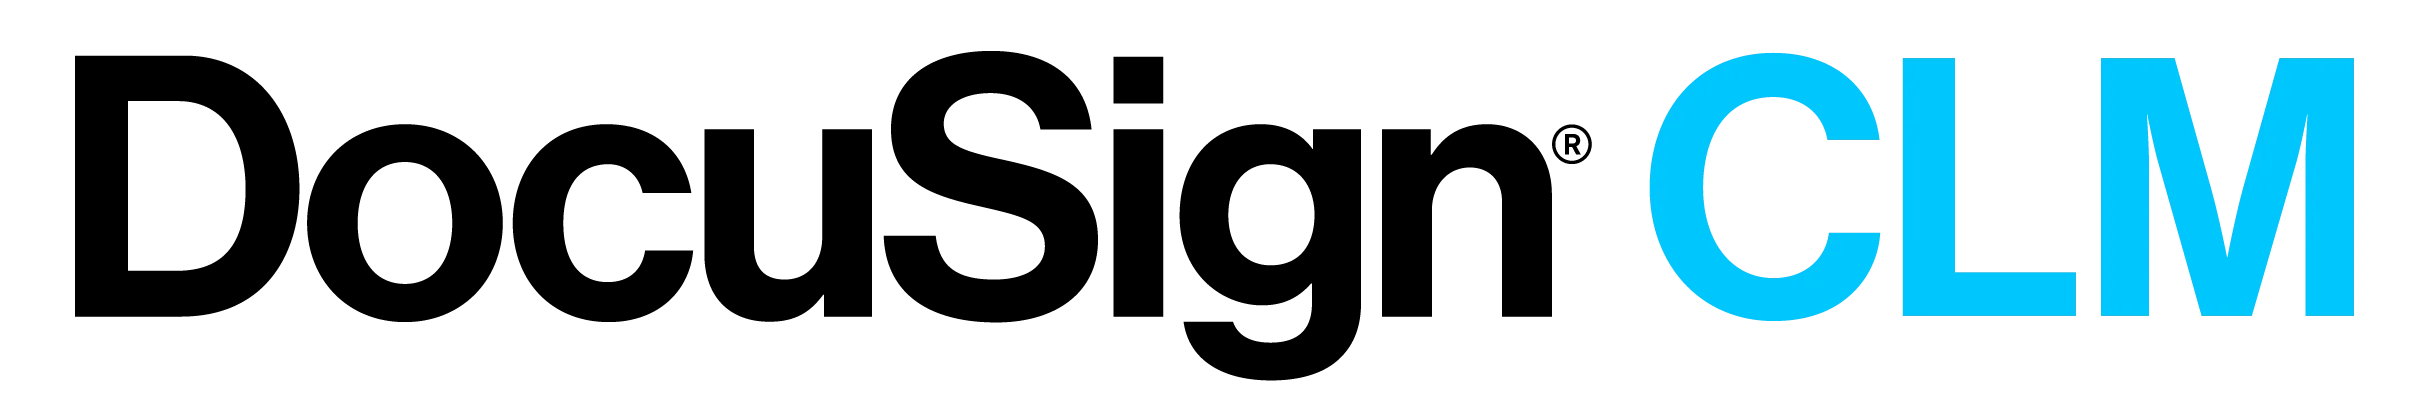 DocuSign CLM logo